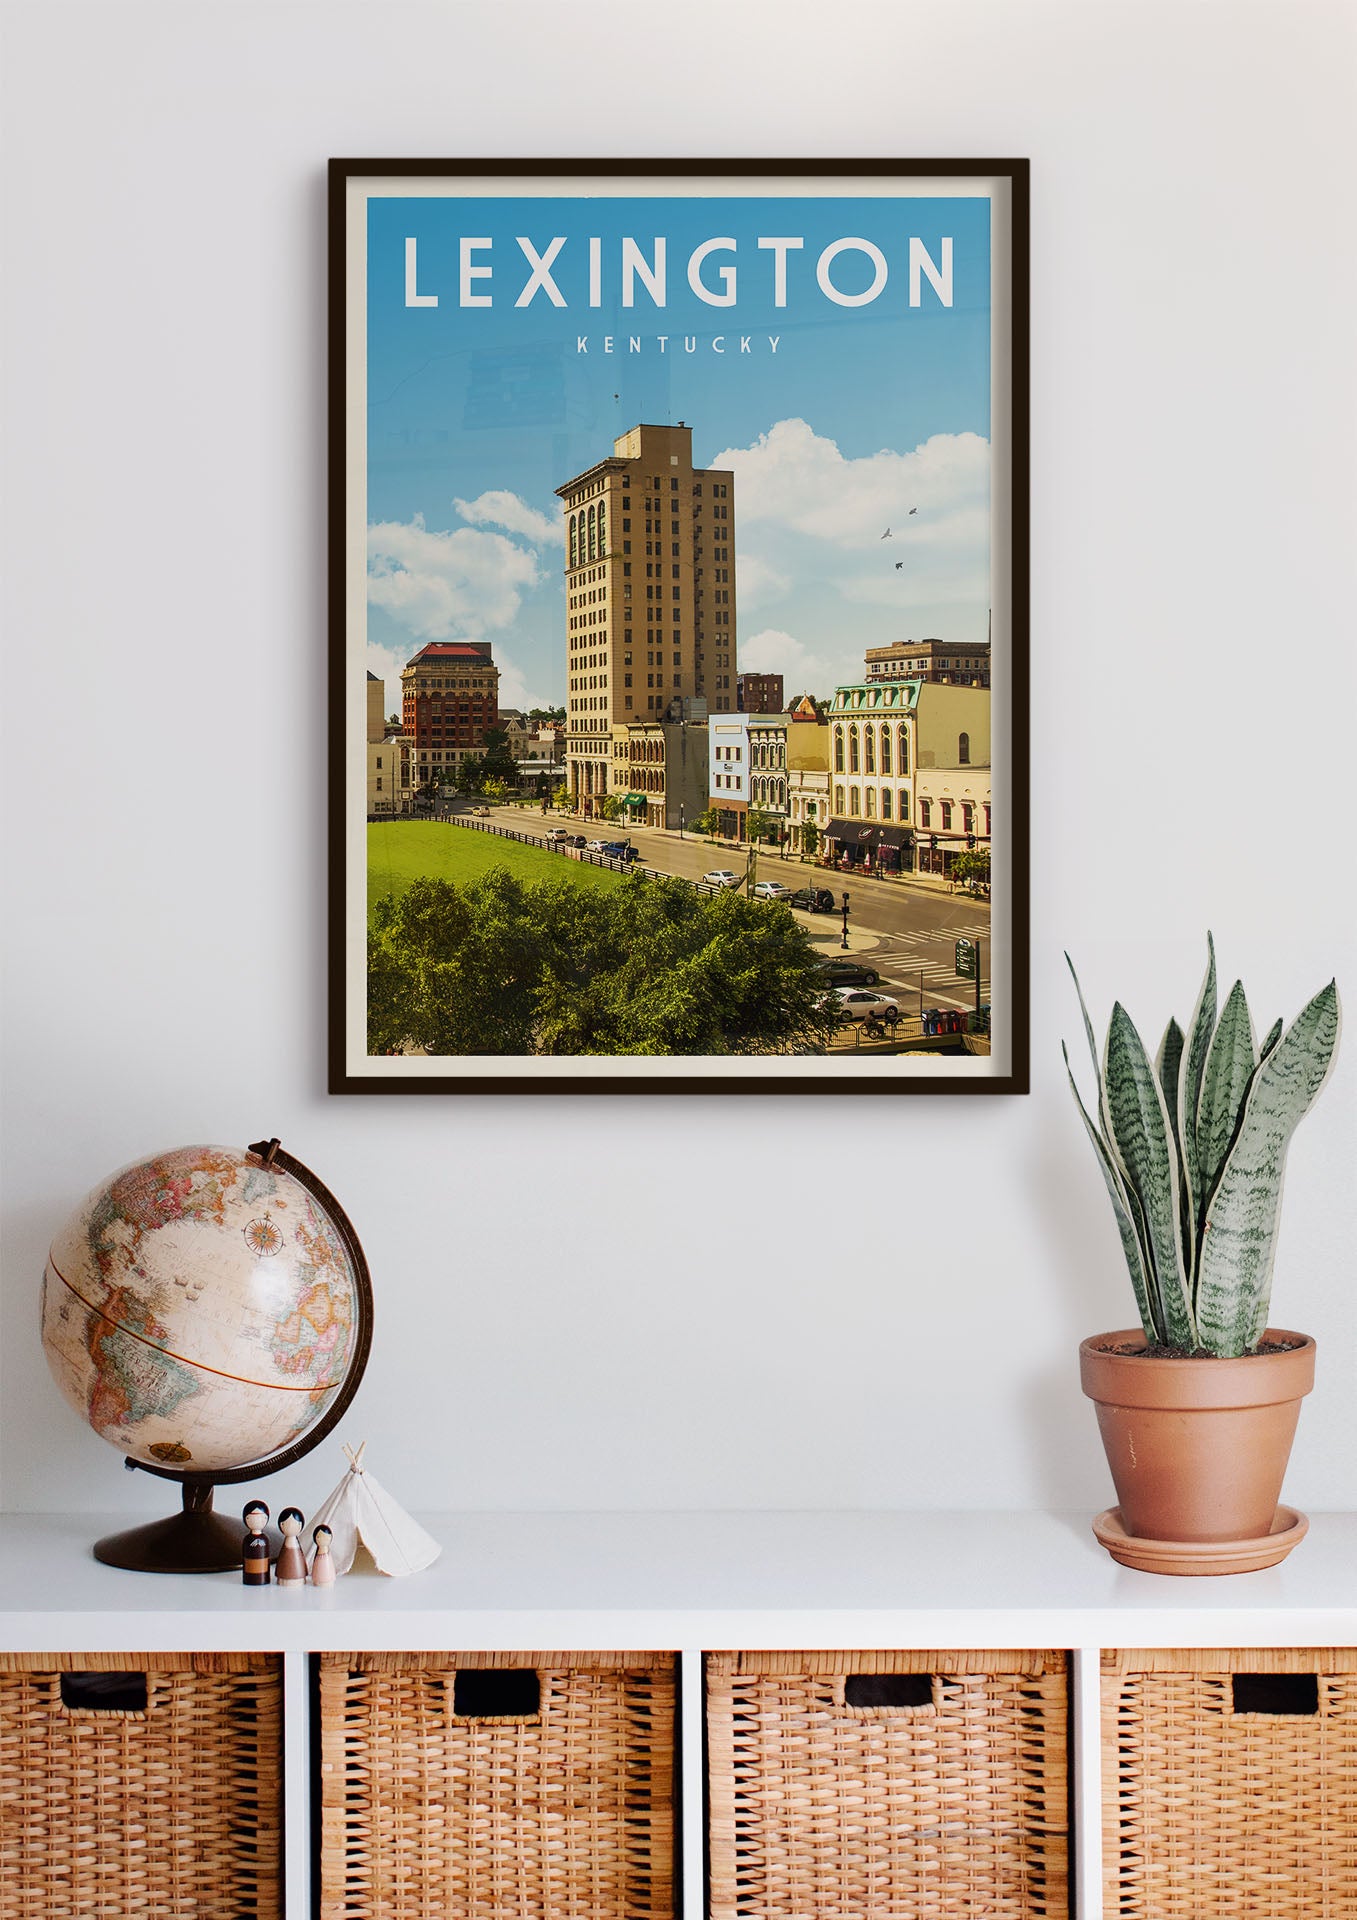 Lexington, Kentucky - Vintage Travel Print - Vintaprints